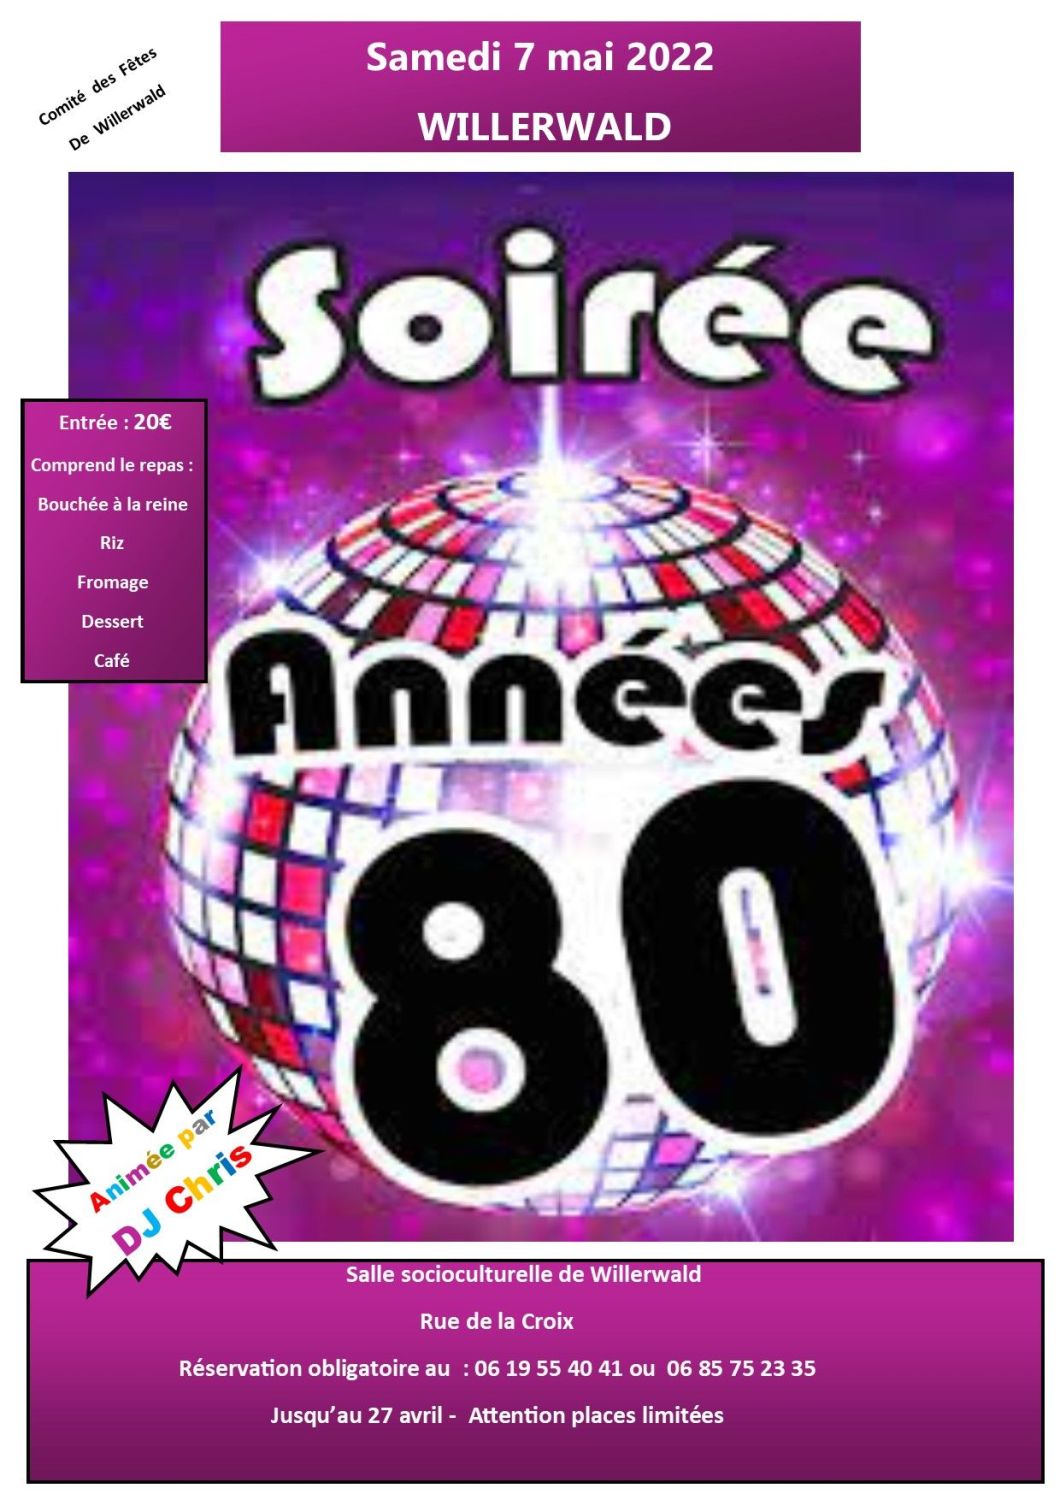 SOIREE ANNES 80